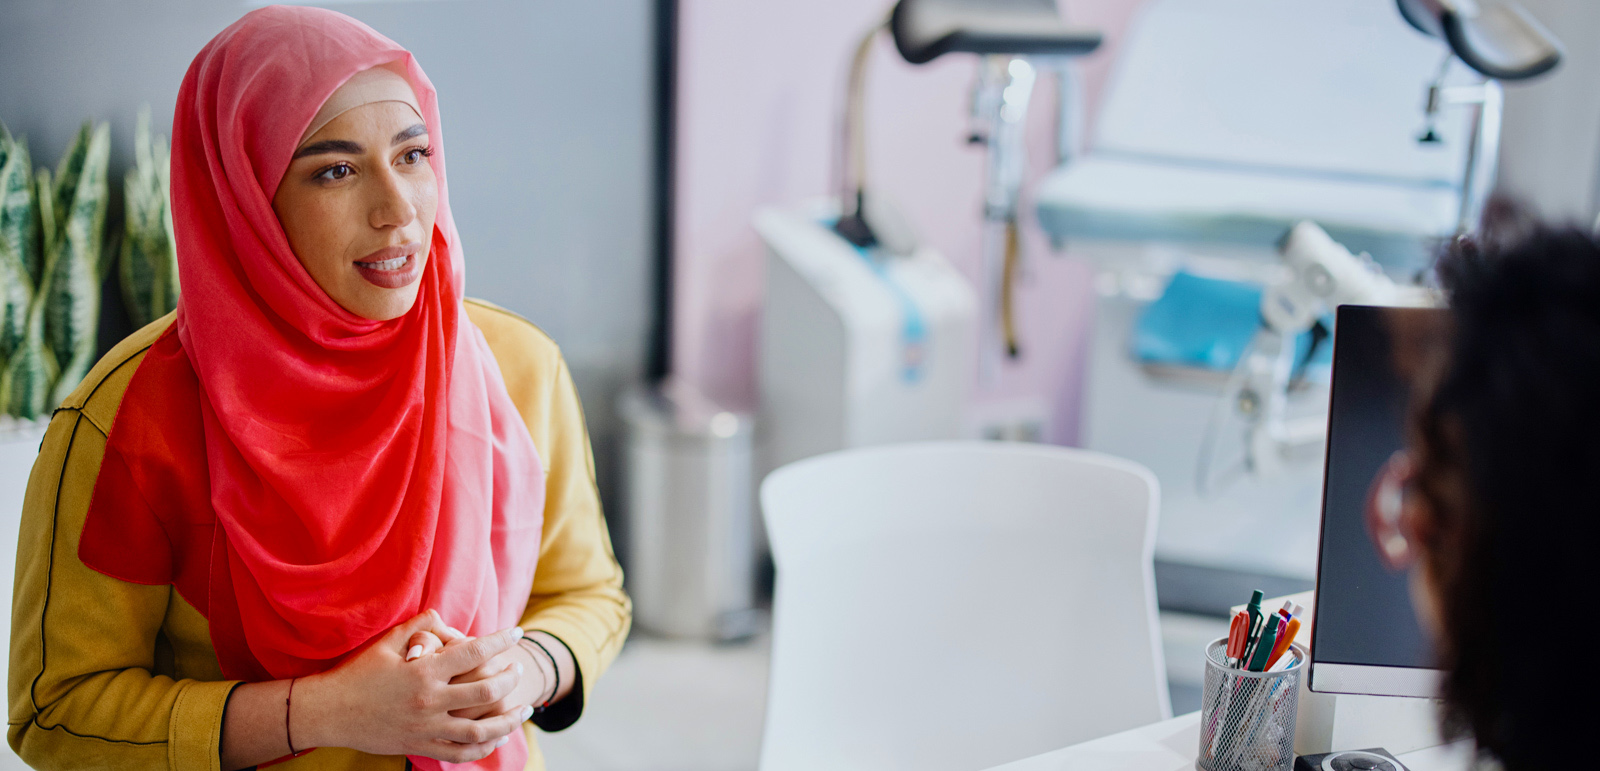 cervical cancer week Muslim women health screening NHS